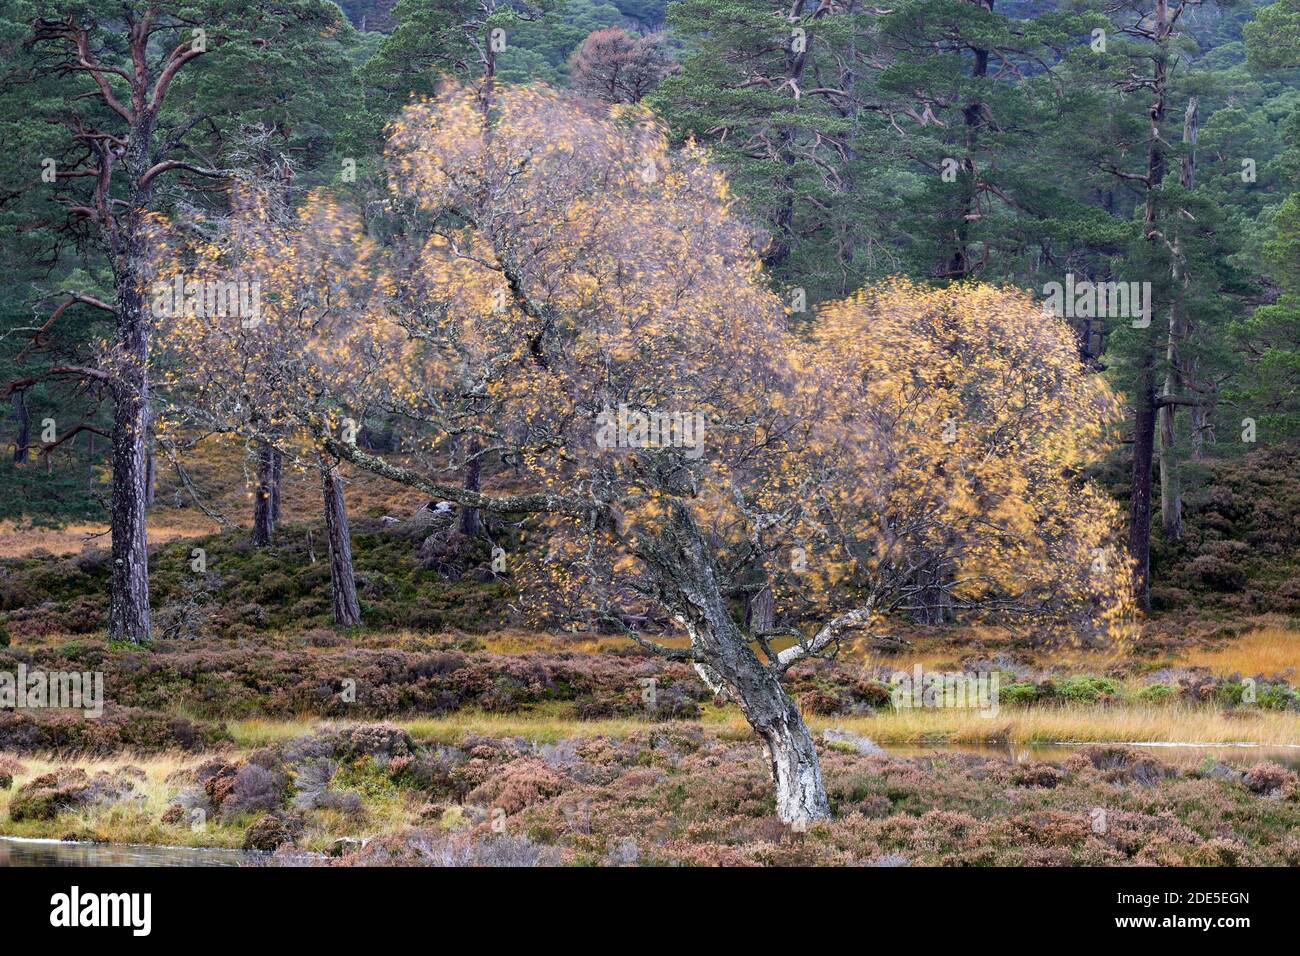 Bouleau argenté soufflant dans le vent, forêt de Ballochbuie, près de Braemar, Deeside, Aberdeenshire, Écosse. Parc national de Cairngorms. Banque D'Images